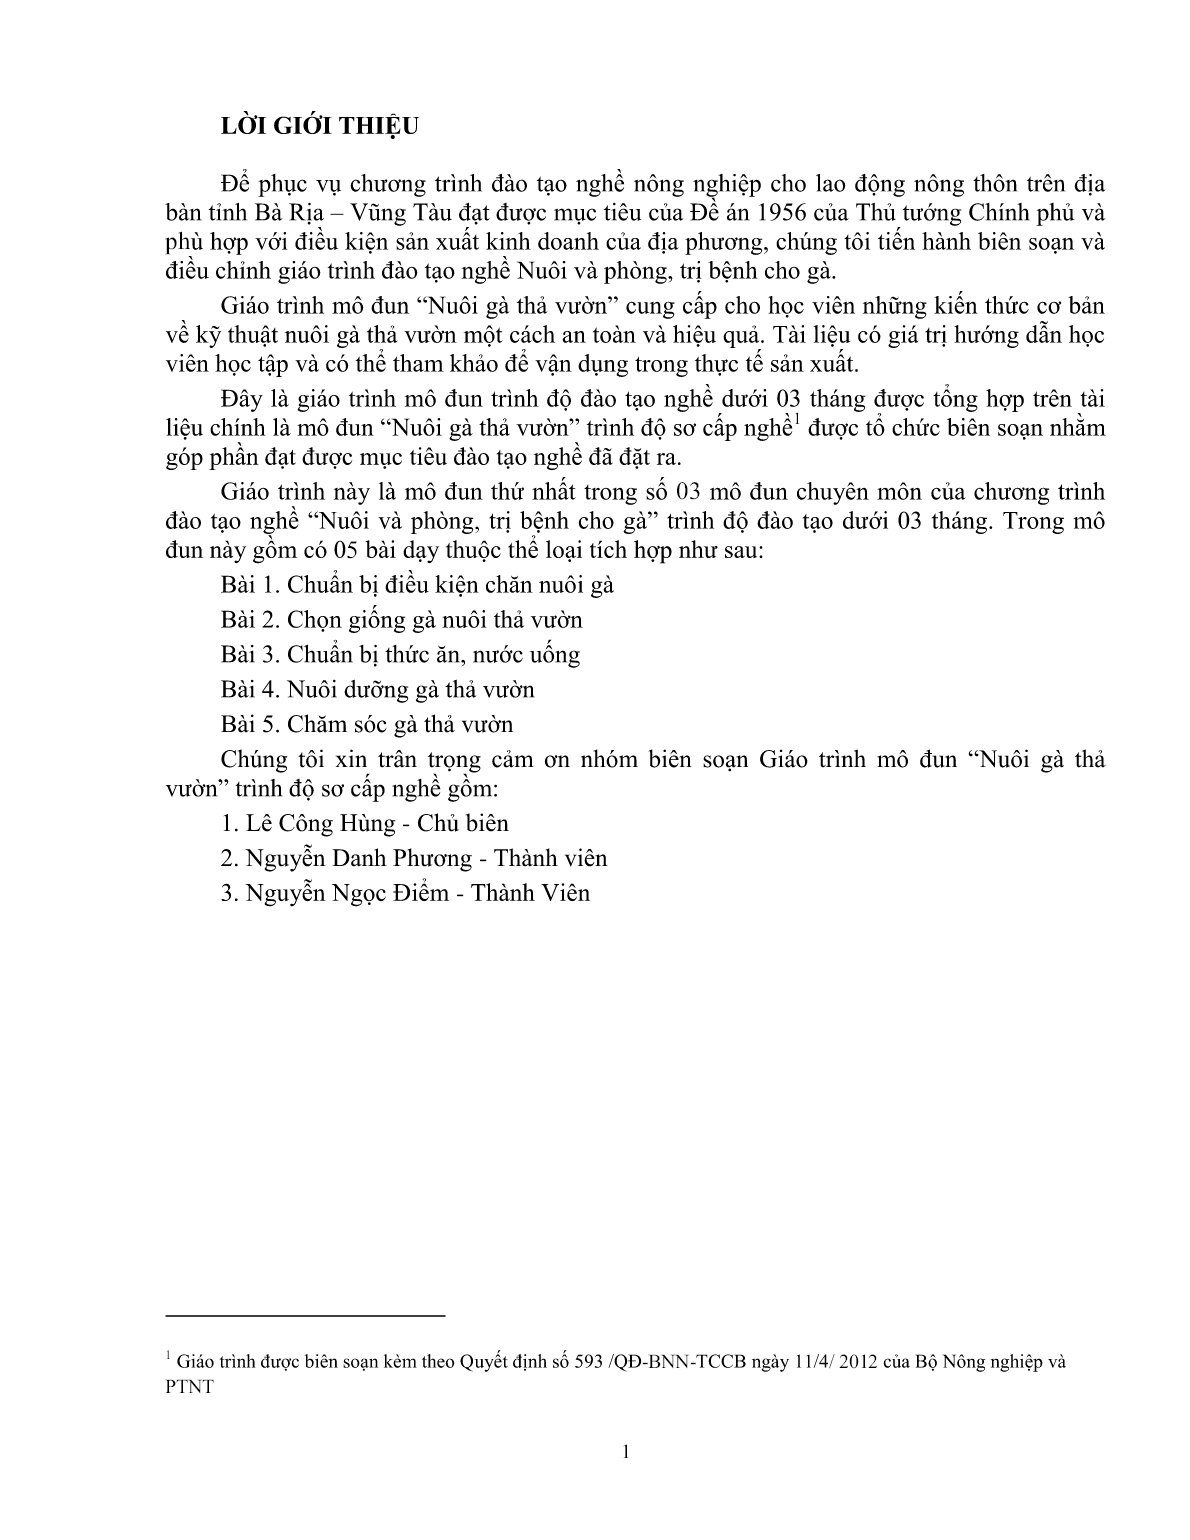 Giáo trình mô đun Nuôi gà thả vườn (Trình độ: Đào tạo dưới 03 tháng) trang 3